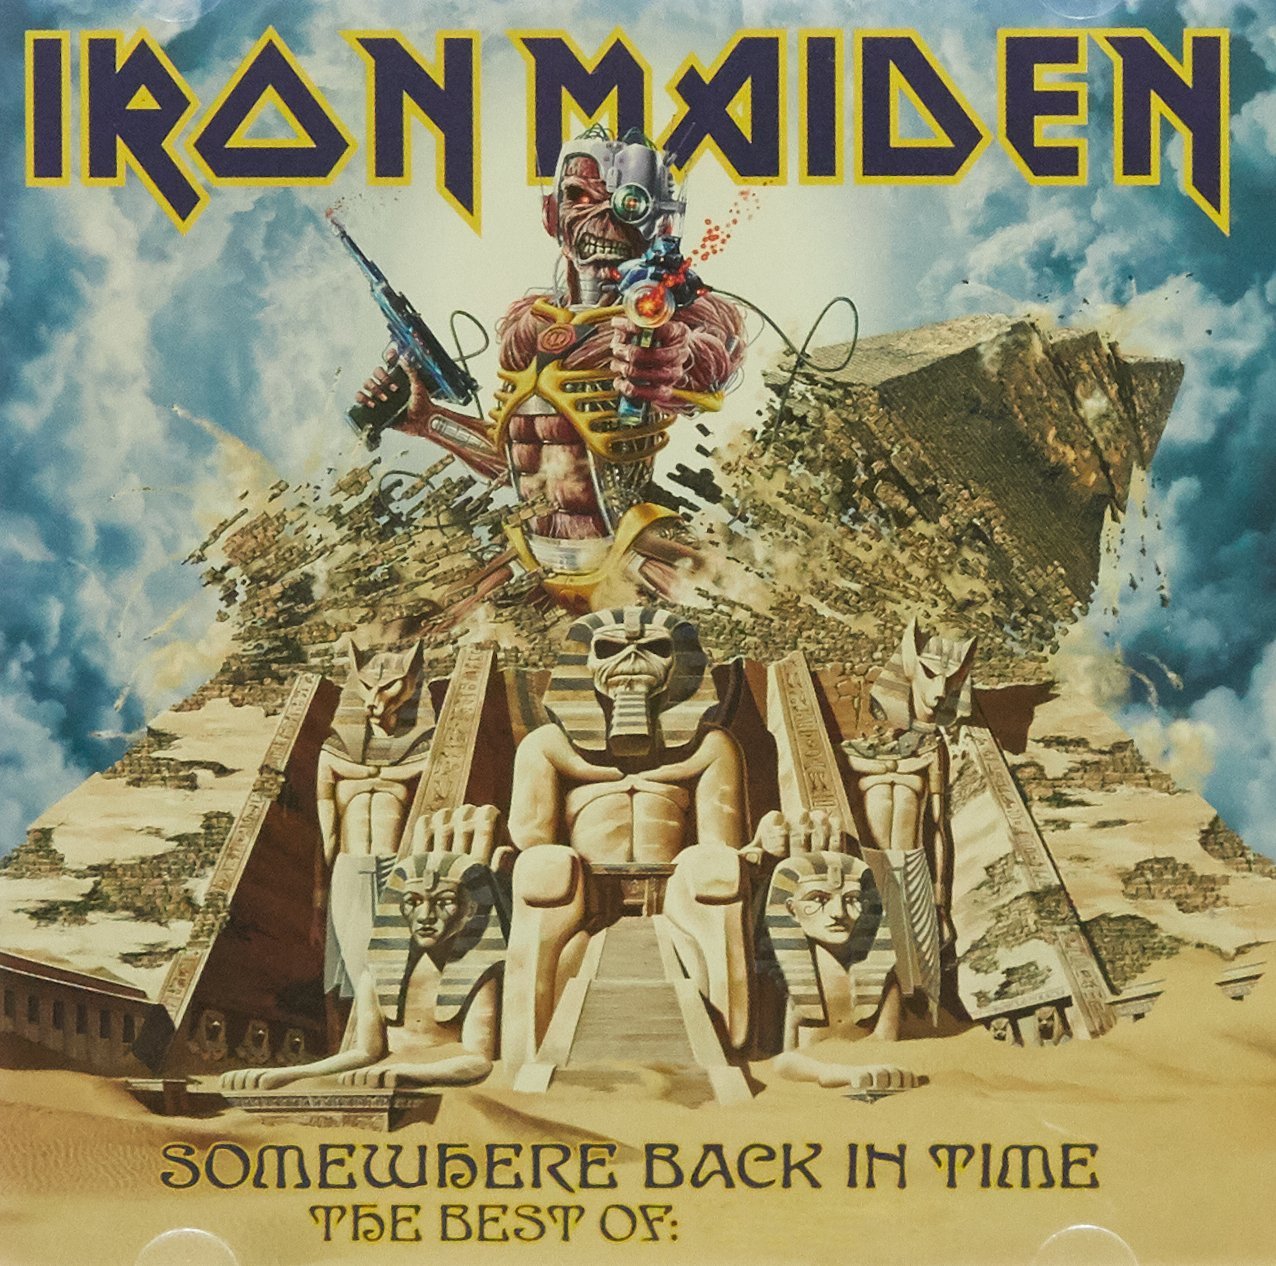 Audio Cd Iron Maiden - Sonewhere Back In Time - Best Of 1980-1989 NUOVO SIGILLATO, EDIZIONE DEL 09/05/2008 SUBITO DISPONIBILE